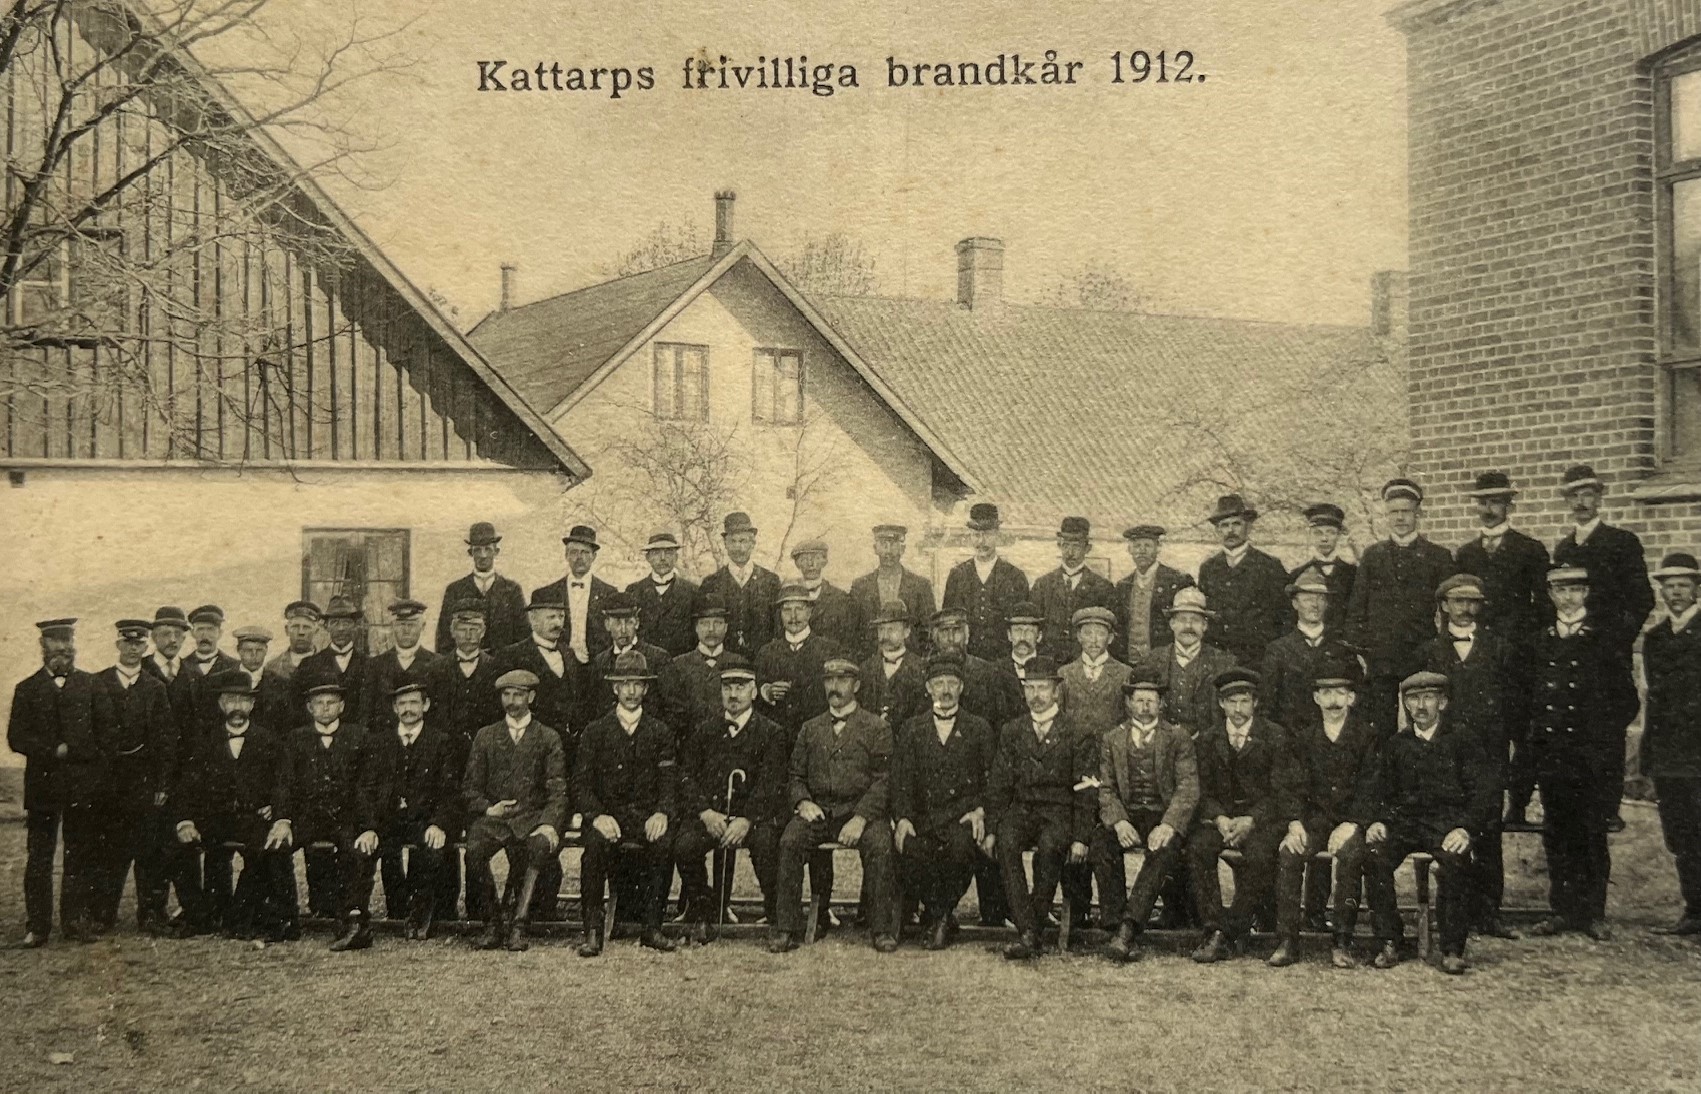 Kattarps frivilliga brandkår 1912